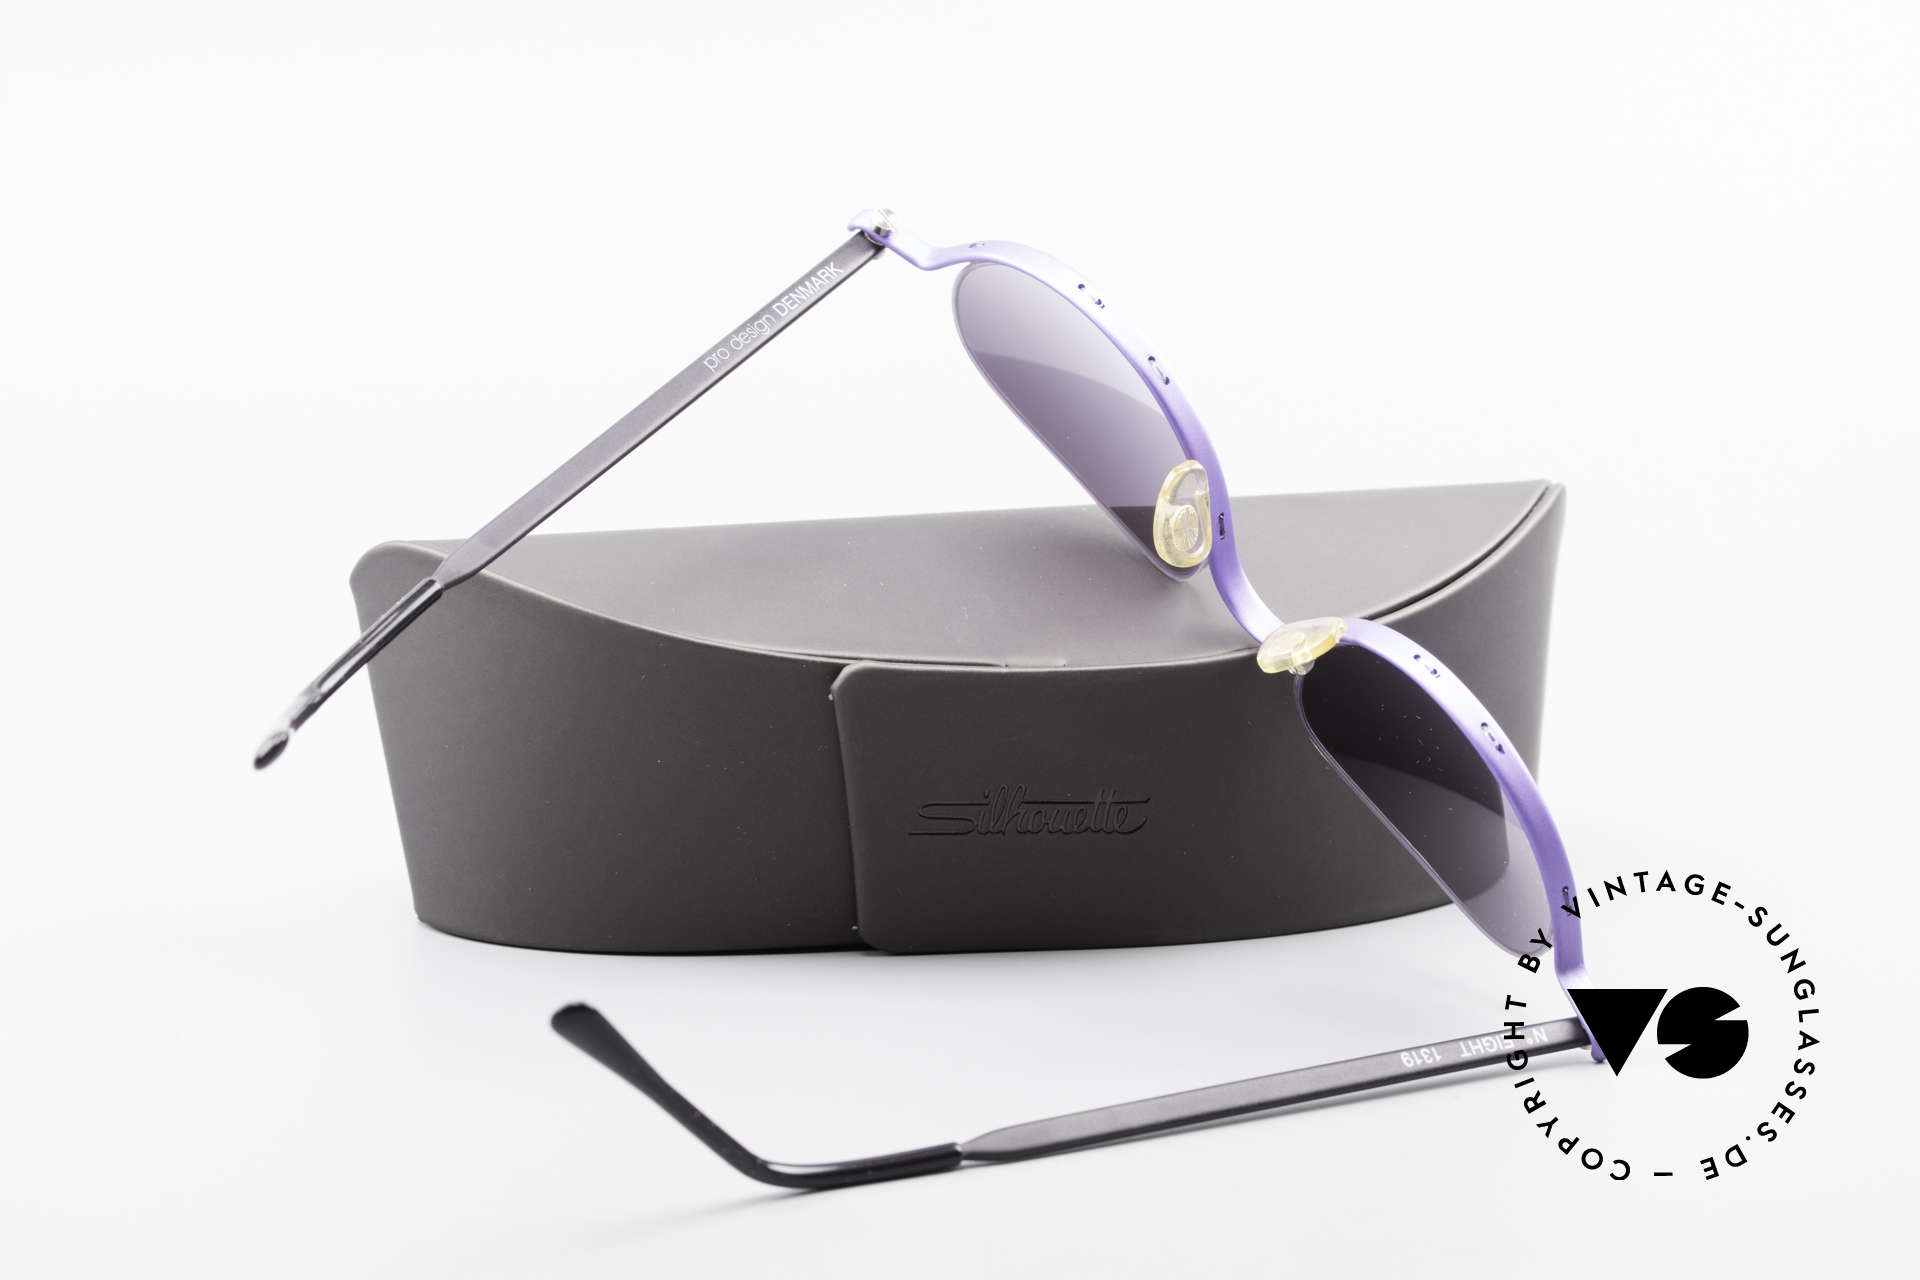 ProDesign No8 Gail Spence Design Brille, Gläser in grau-violett-Verlauf + Etui von Silhouette, Passend für Damen